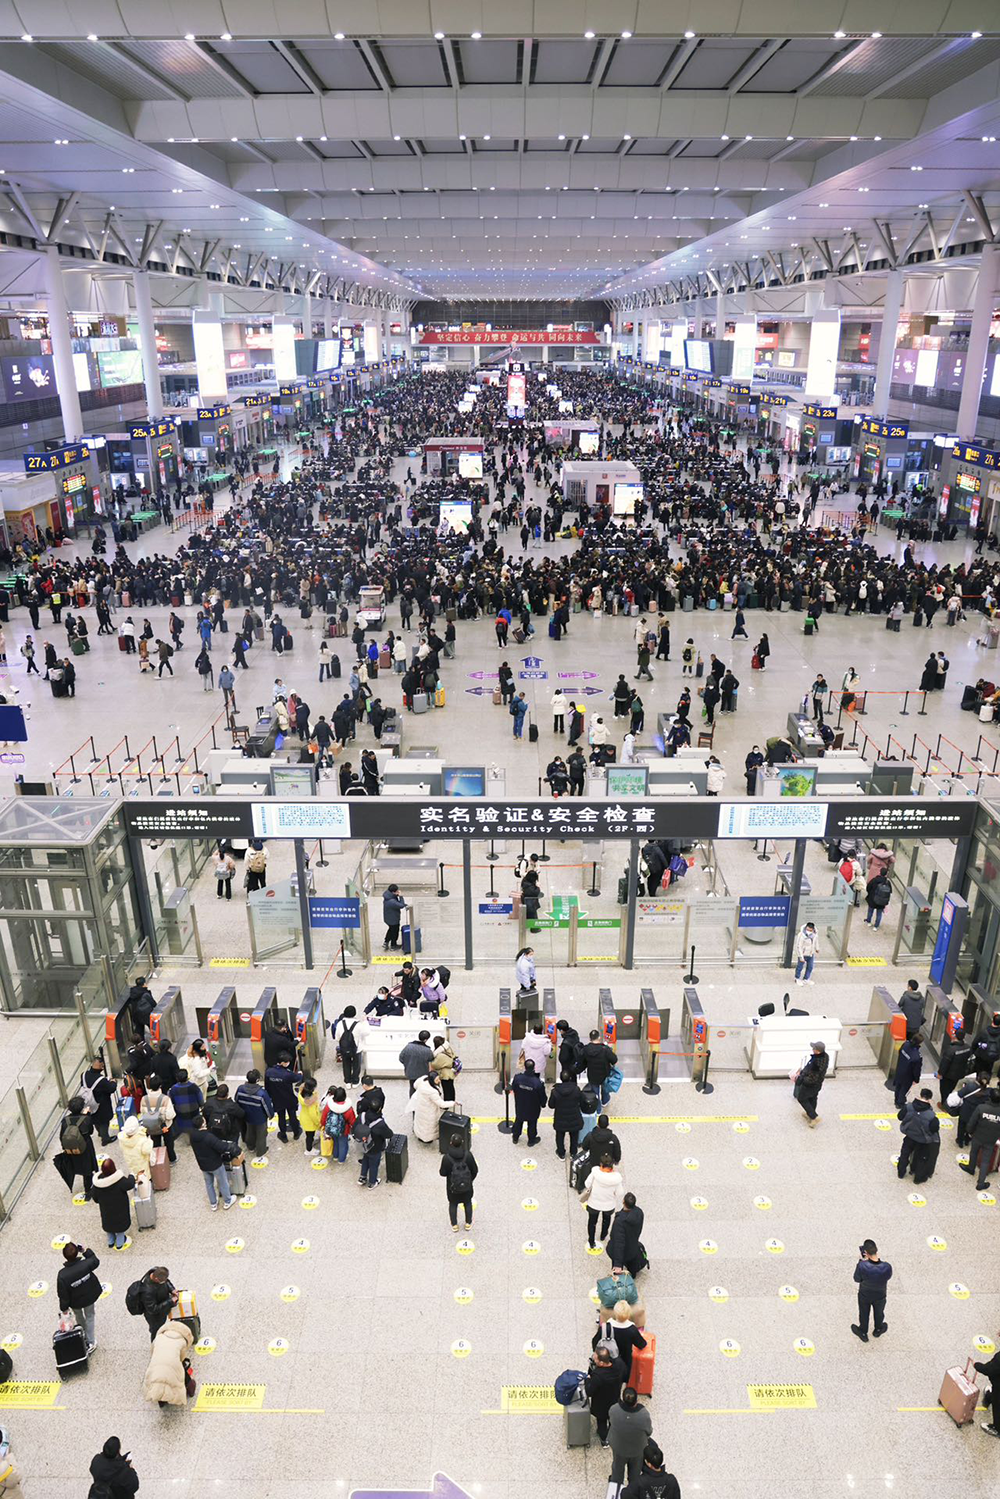 2月4日零点时分,上海虹桥火车站候车大厅,即将出行的候车旅客